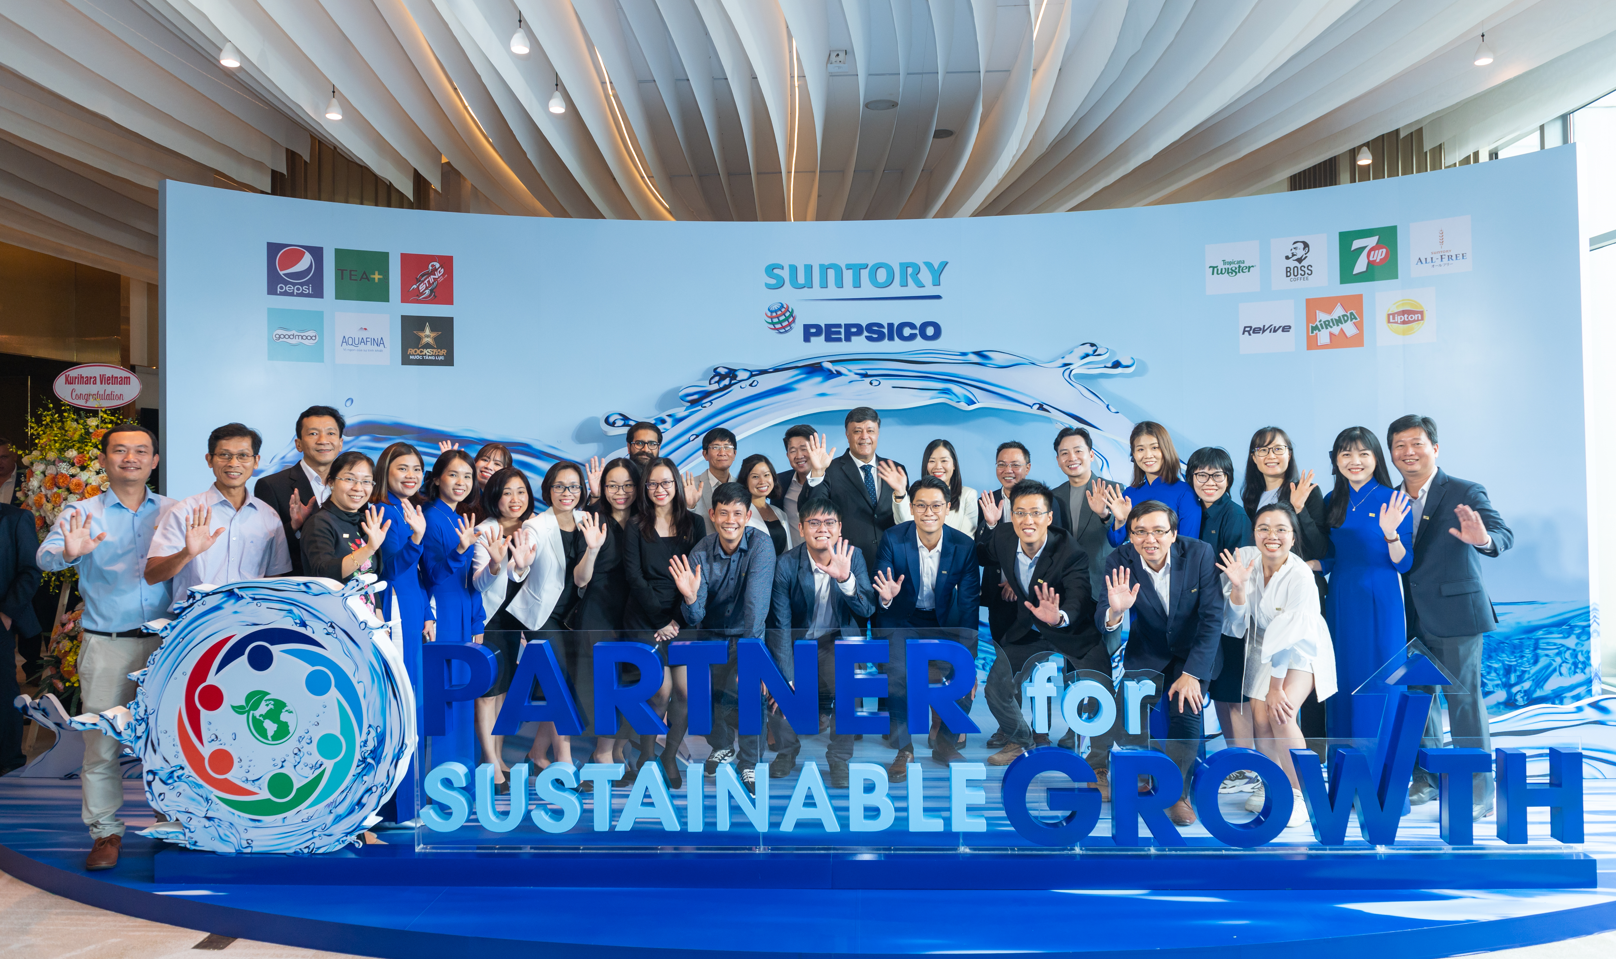 Suntory PepsiCo cùng các đối tác cam kết phát triển bền vững hướng đến một Việt Nam tốt đẹp hơn